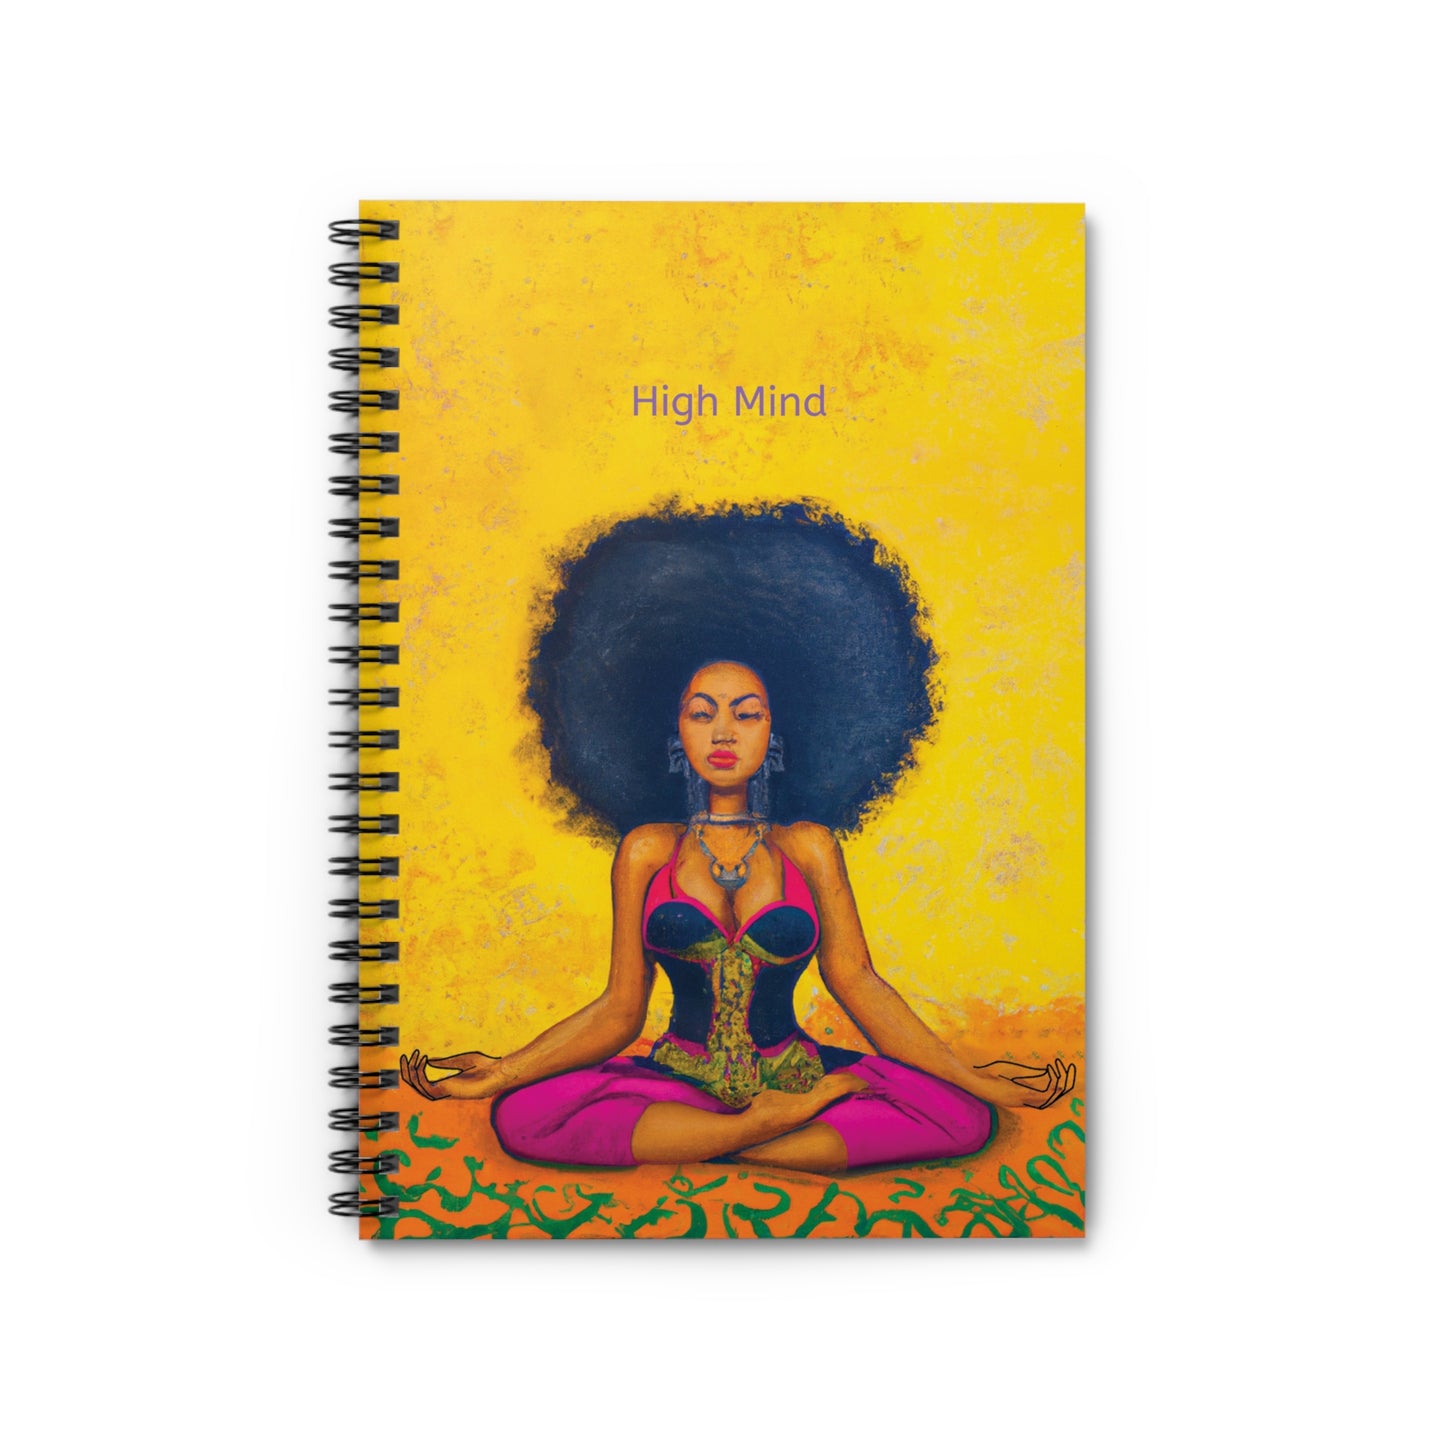 High Mind- Journal Notebook